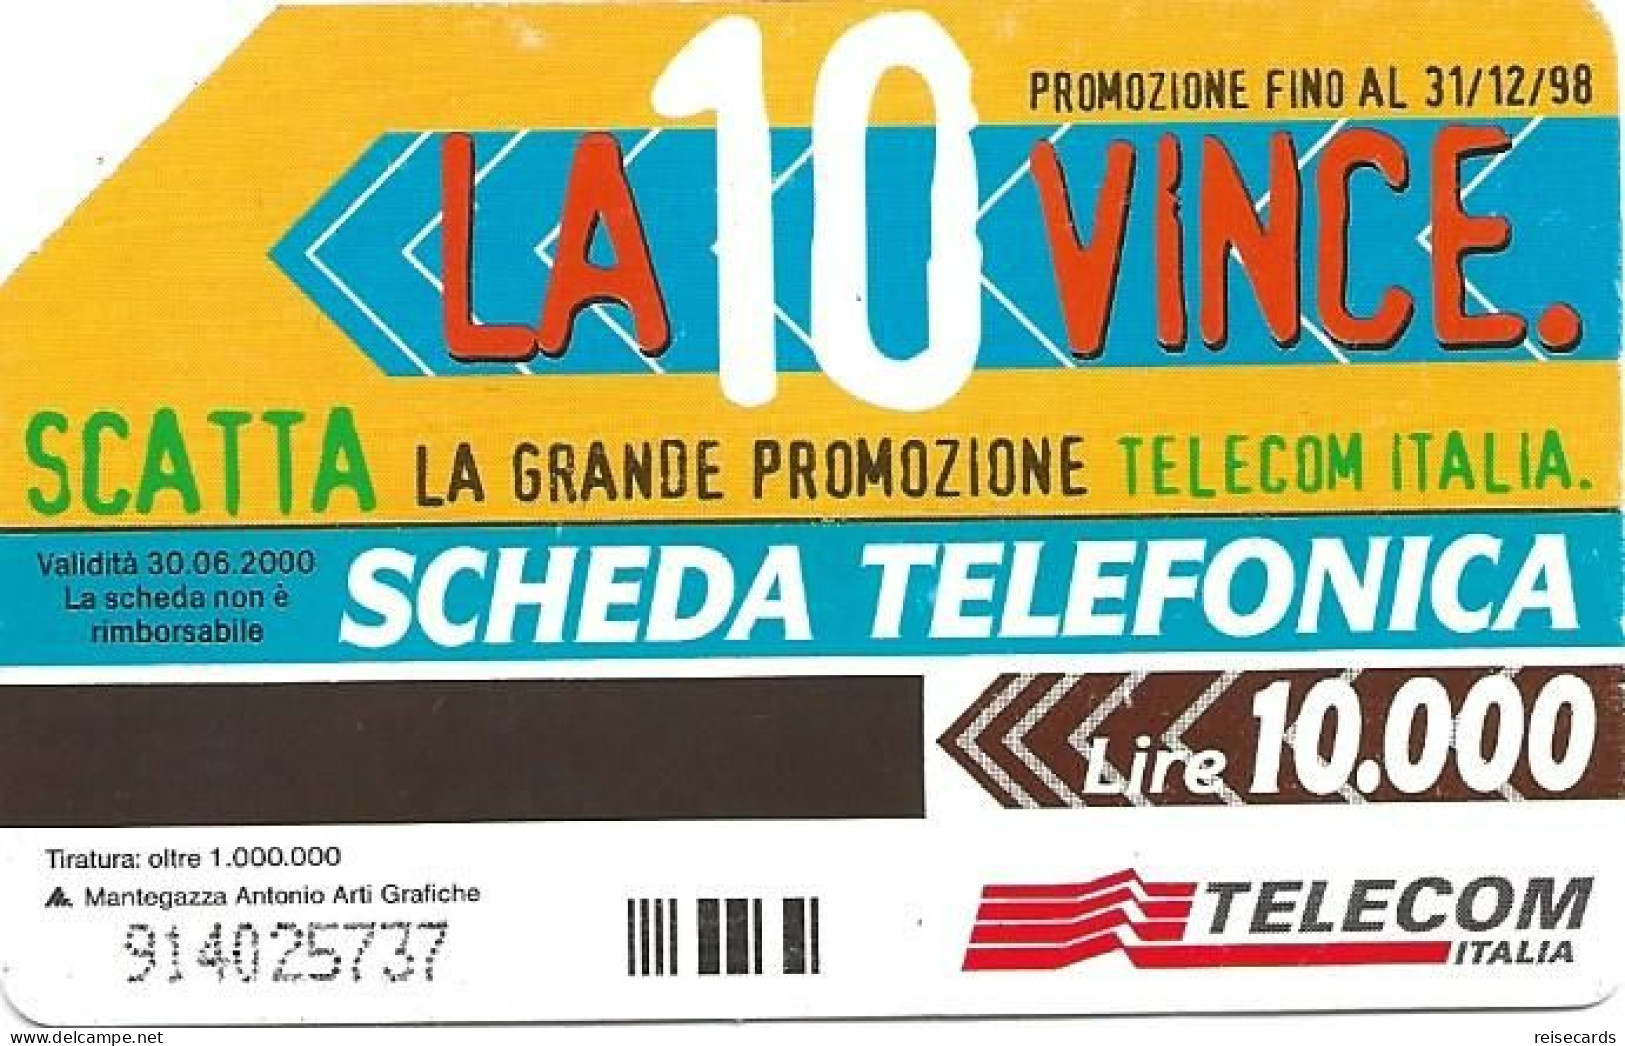 Italy: Telecom Italia - La 10 Vince - Pubbliche Pubblicitarie